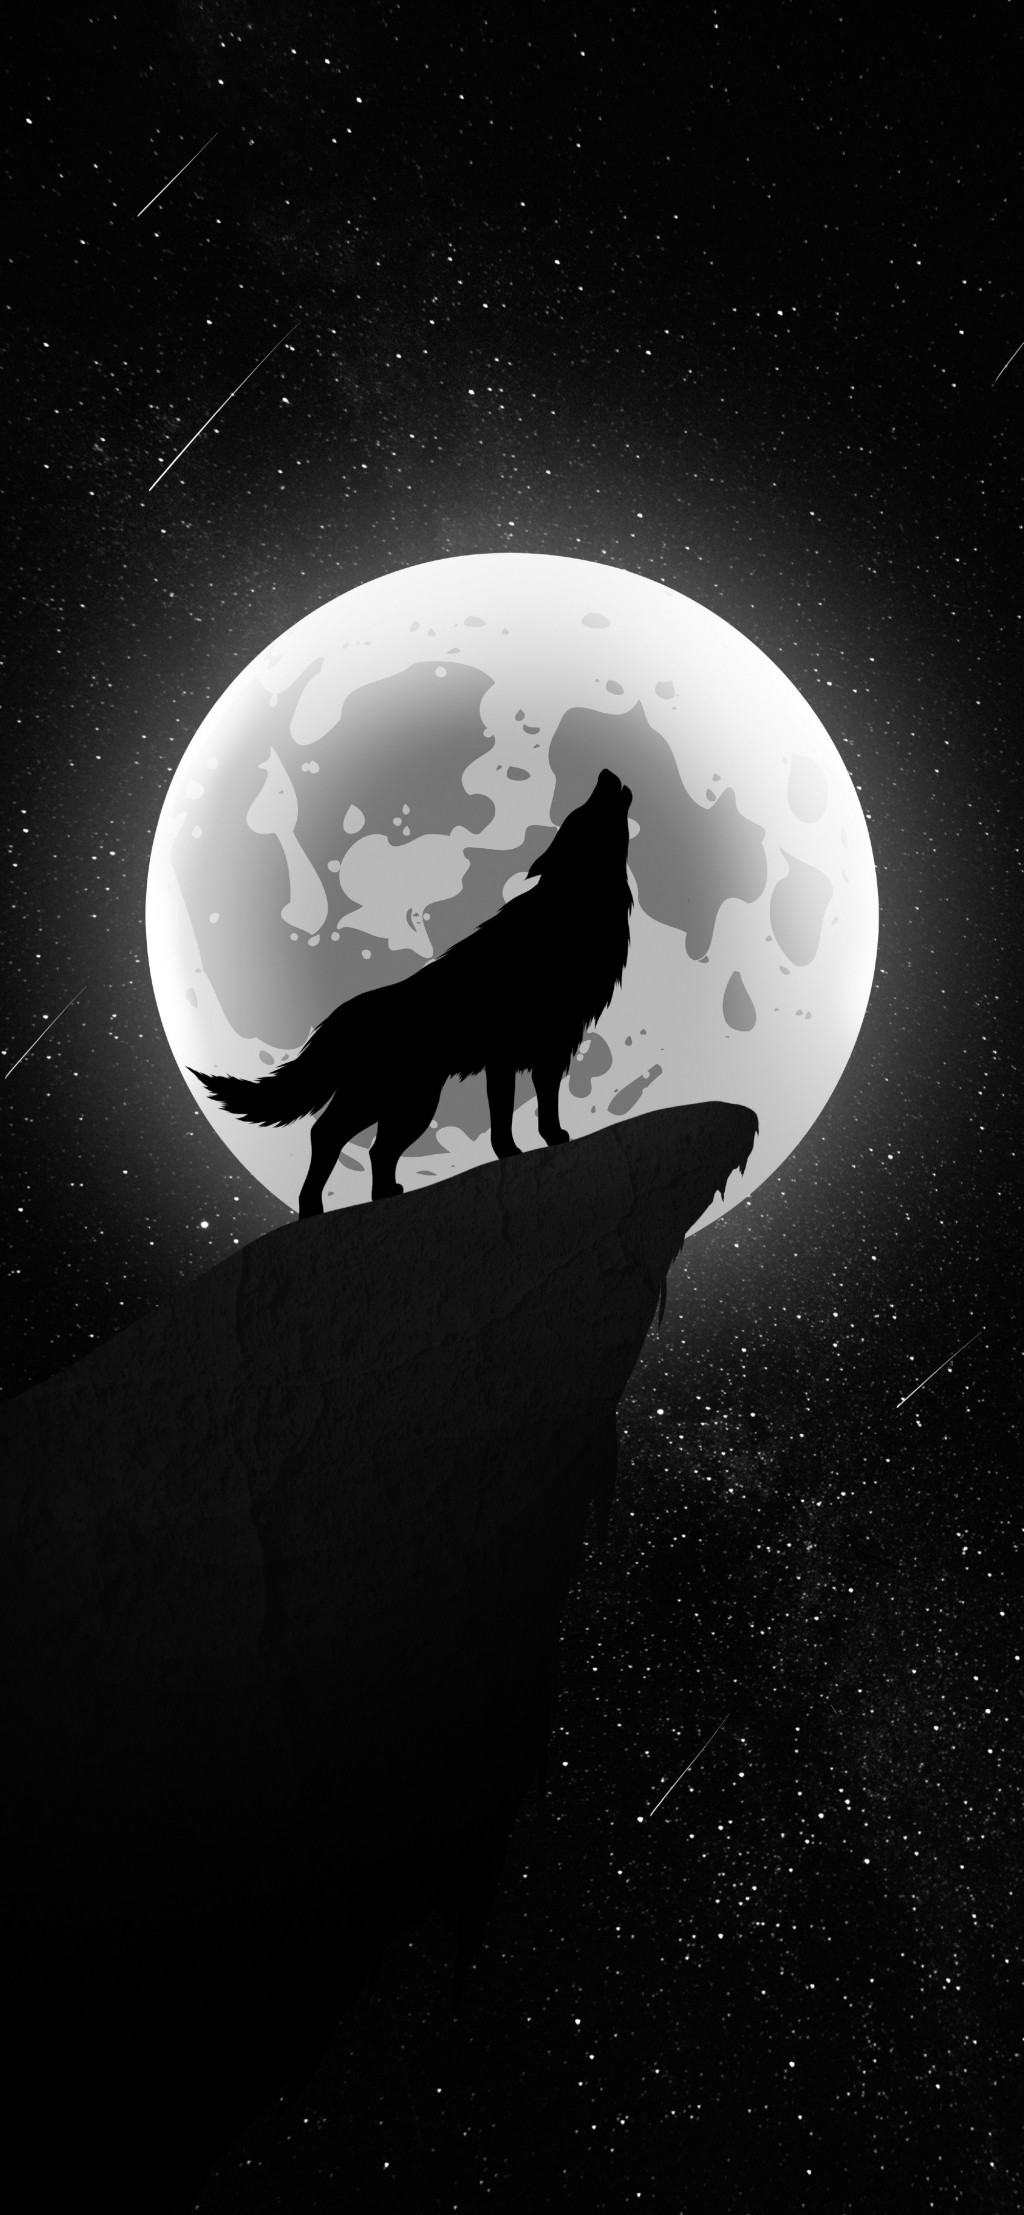 狼系列唯美意境手机壁纸 动物 靓丽图库